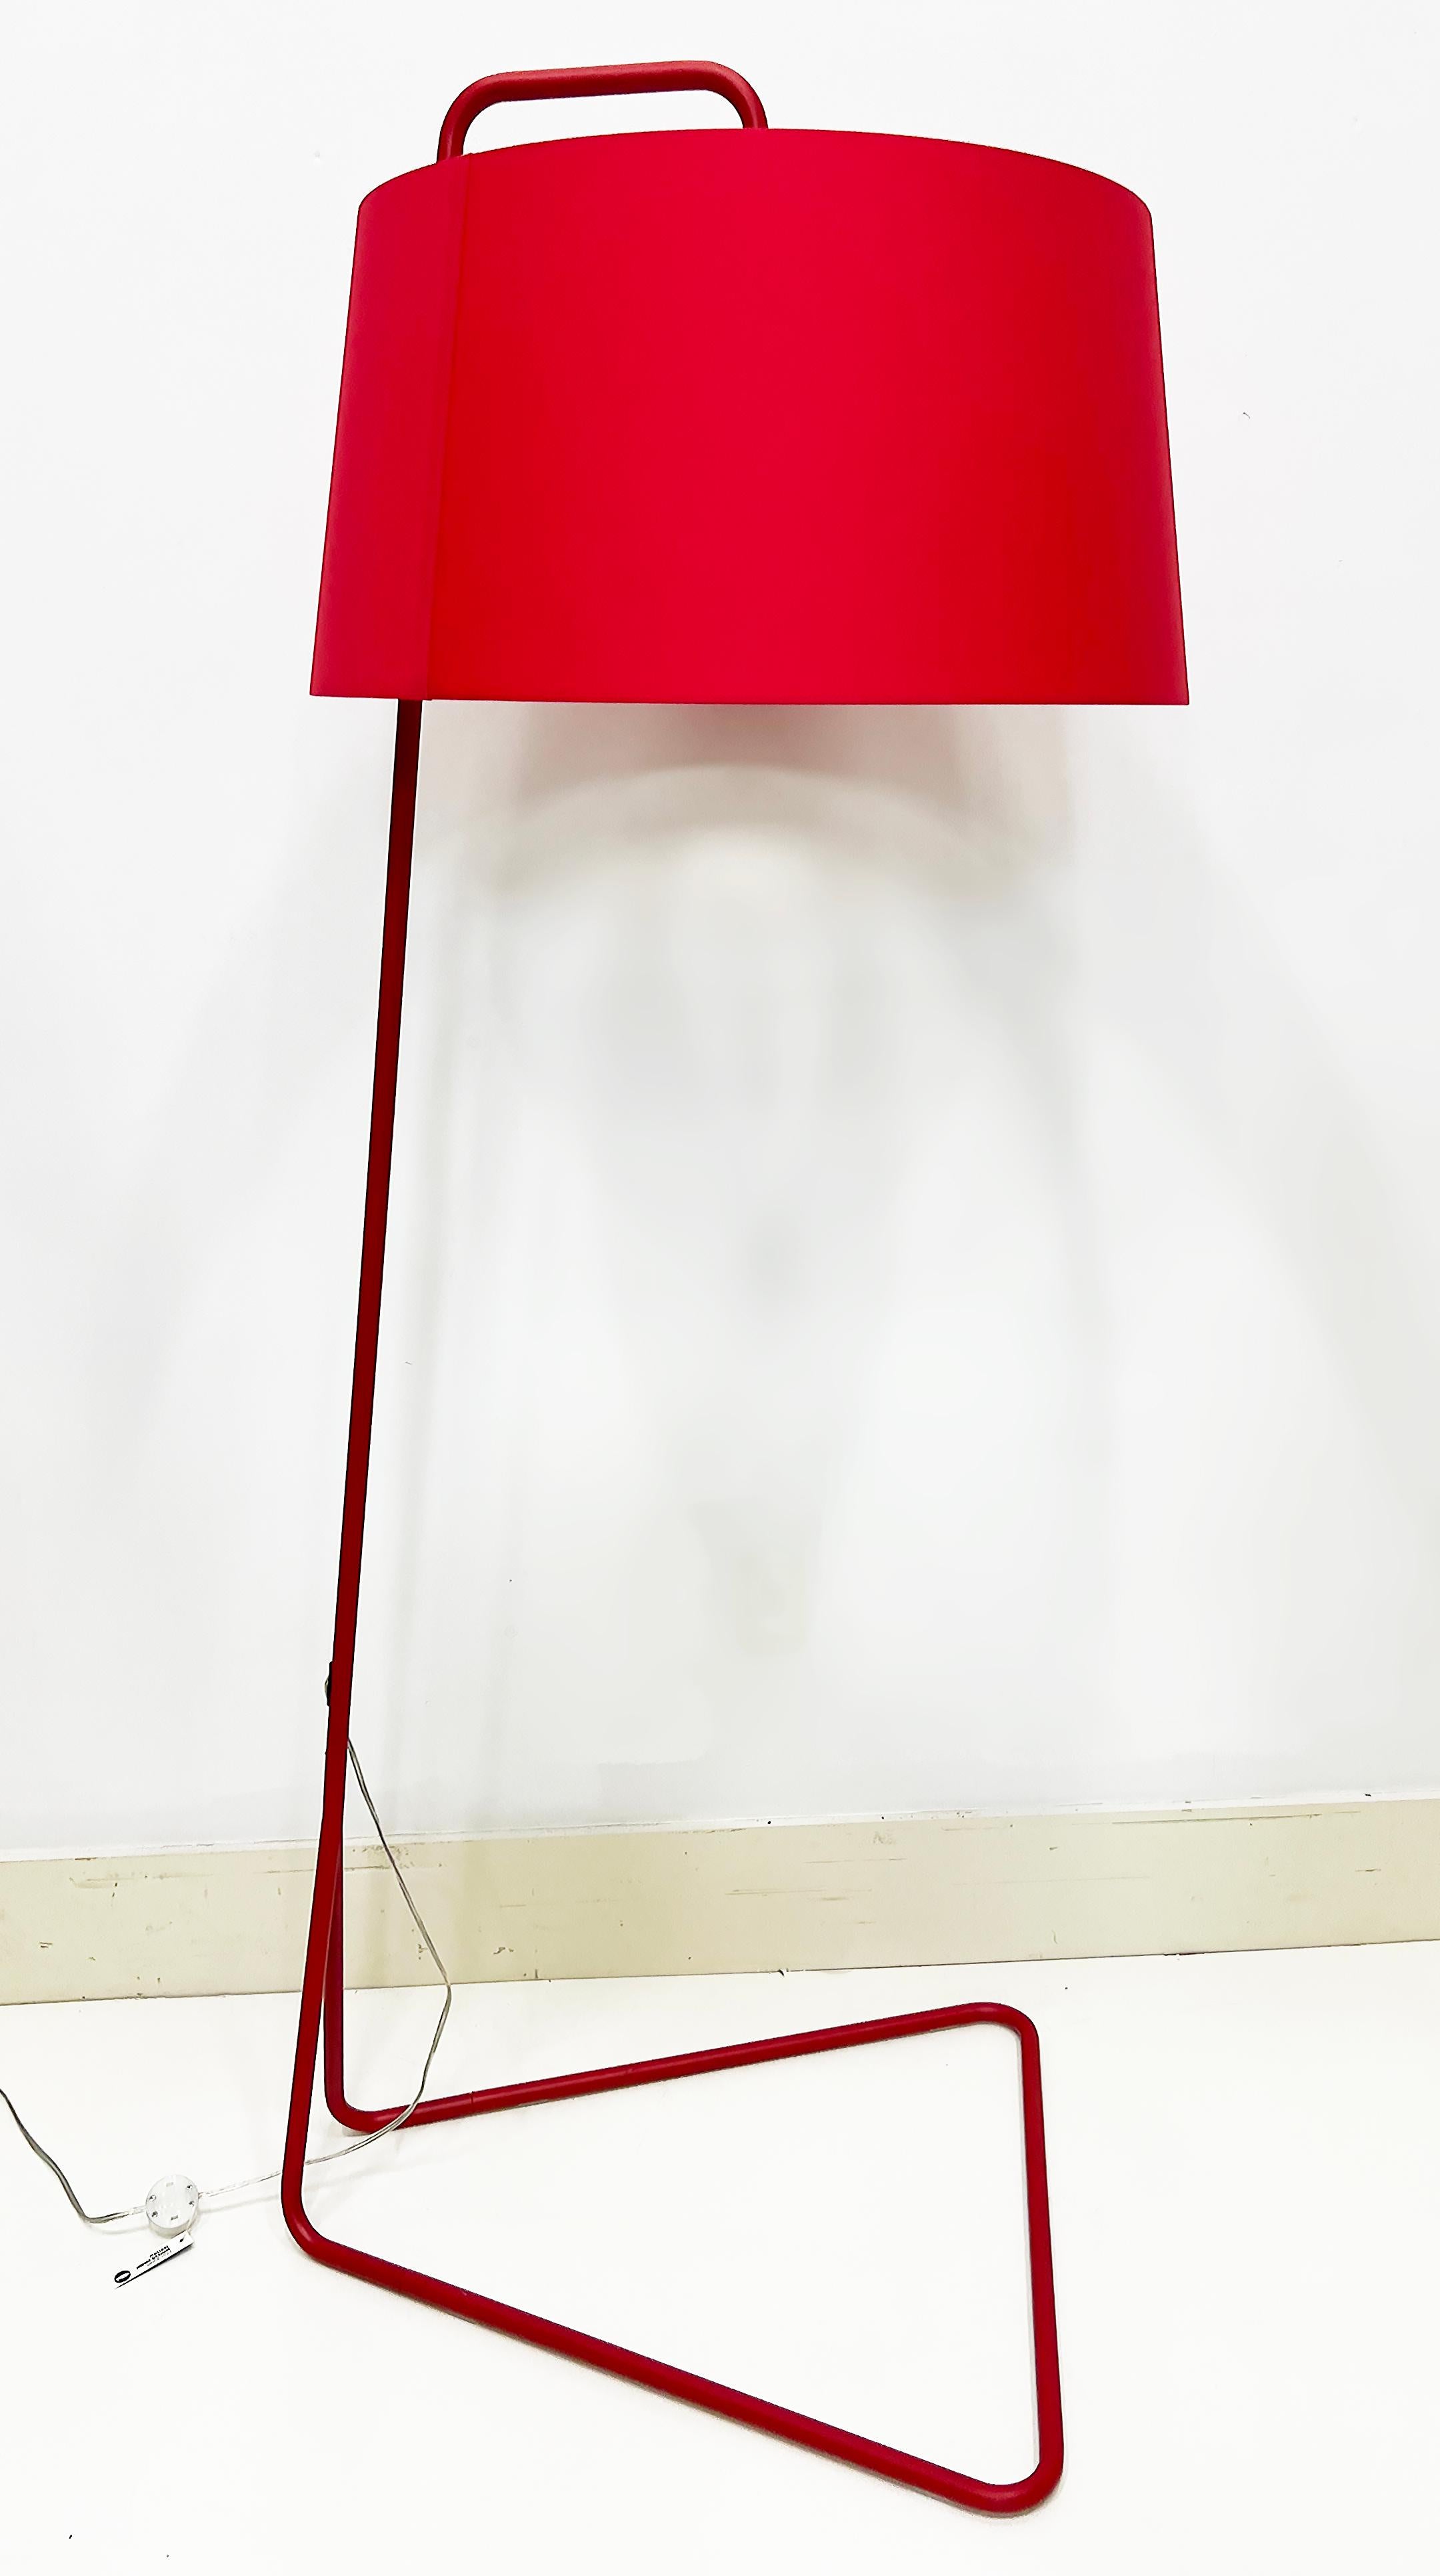 Comme neuf Lampadaire Sextans de Calligaris en rouge d'Italie

Nous proposons à la vente un lampadaire modèle Calligaris Sextans en métal fini en rouge avec un grand abat-jour tambour rouge.  La suspension Sextans est équipée d'un grand abat-jour en